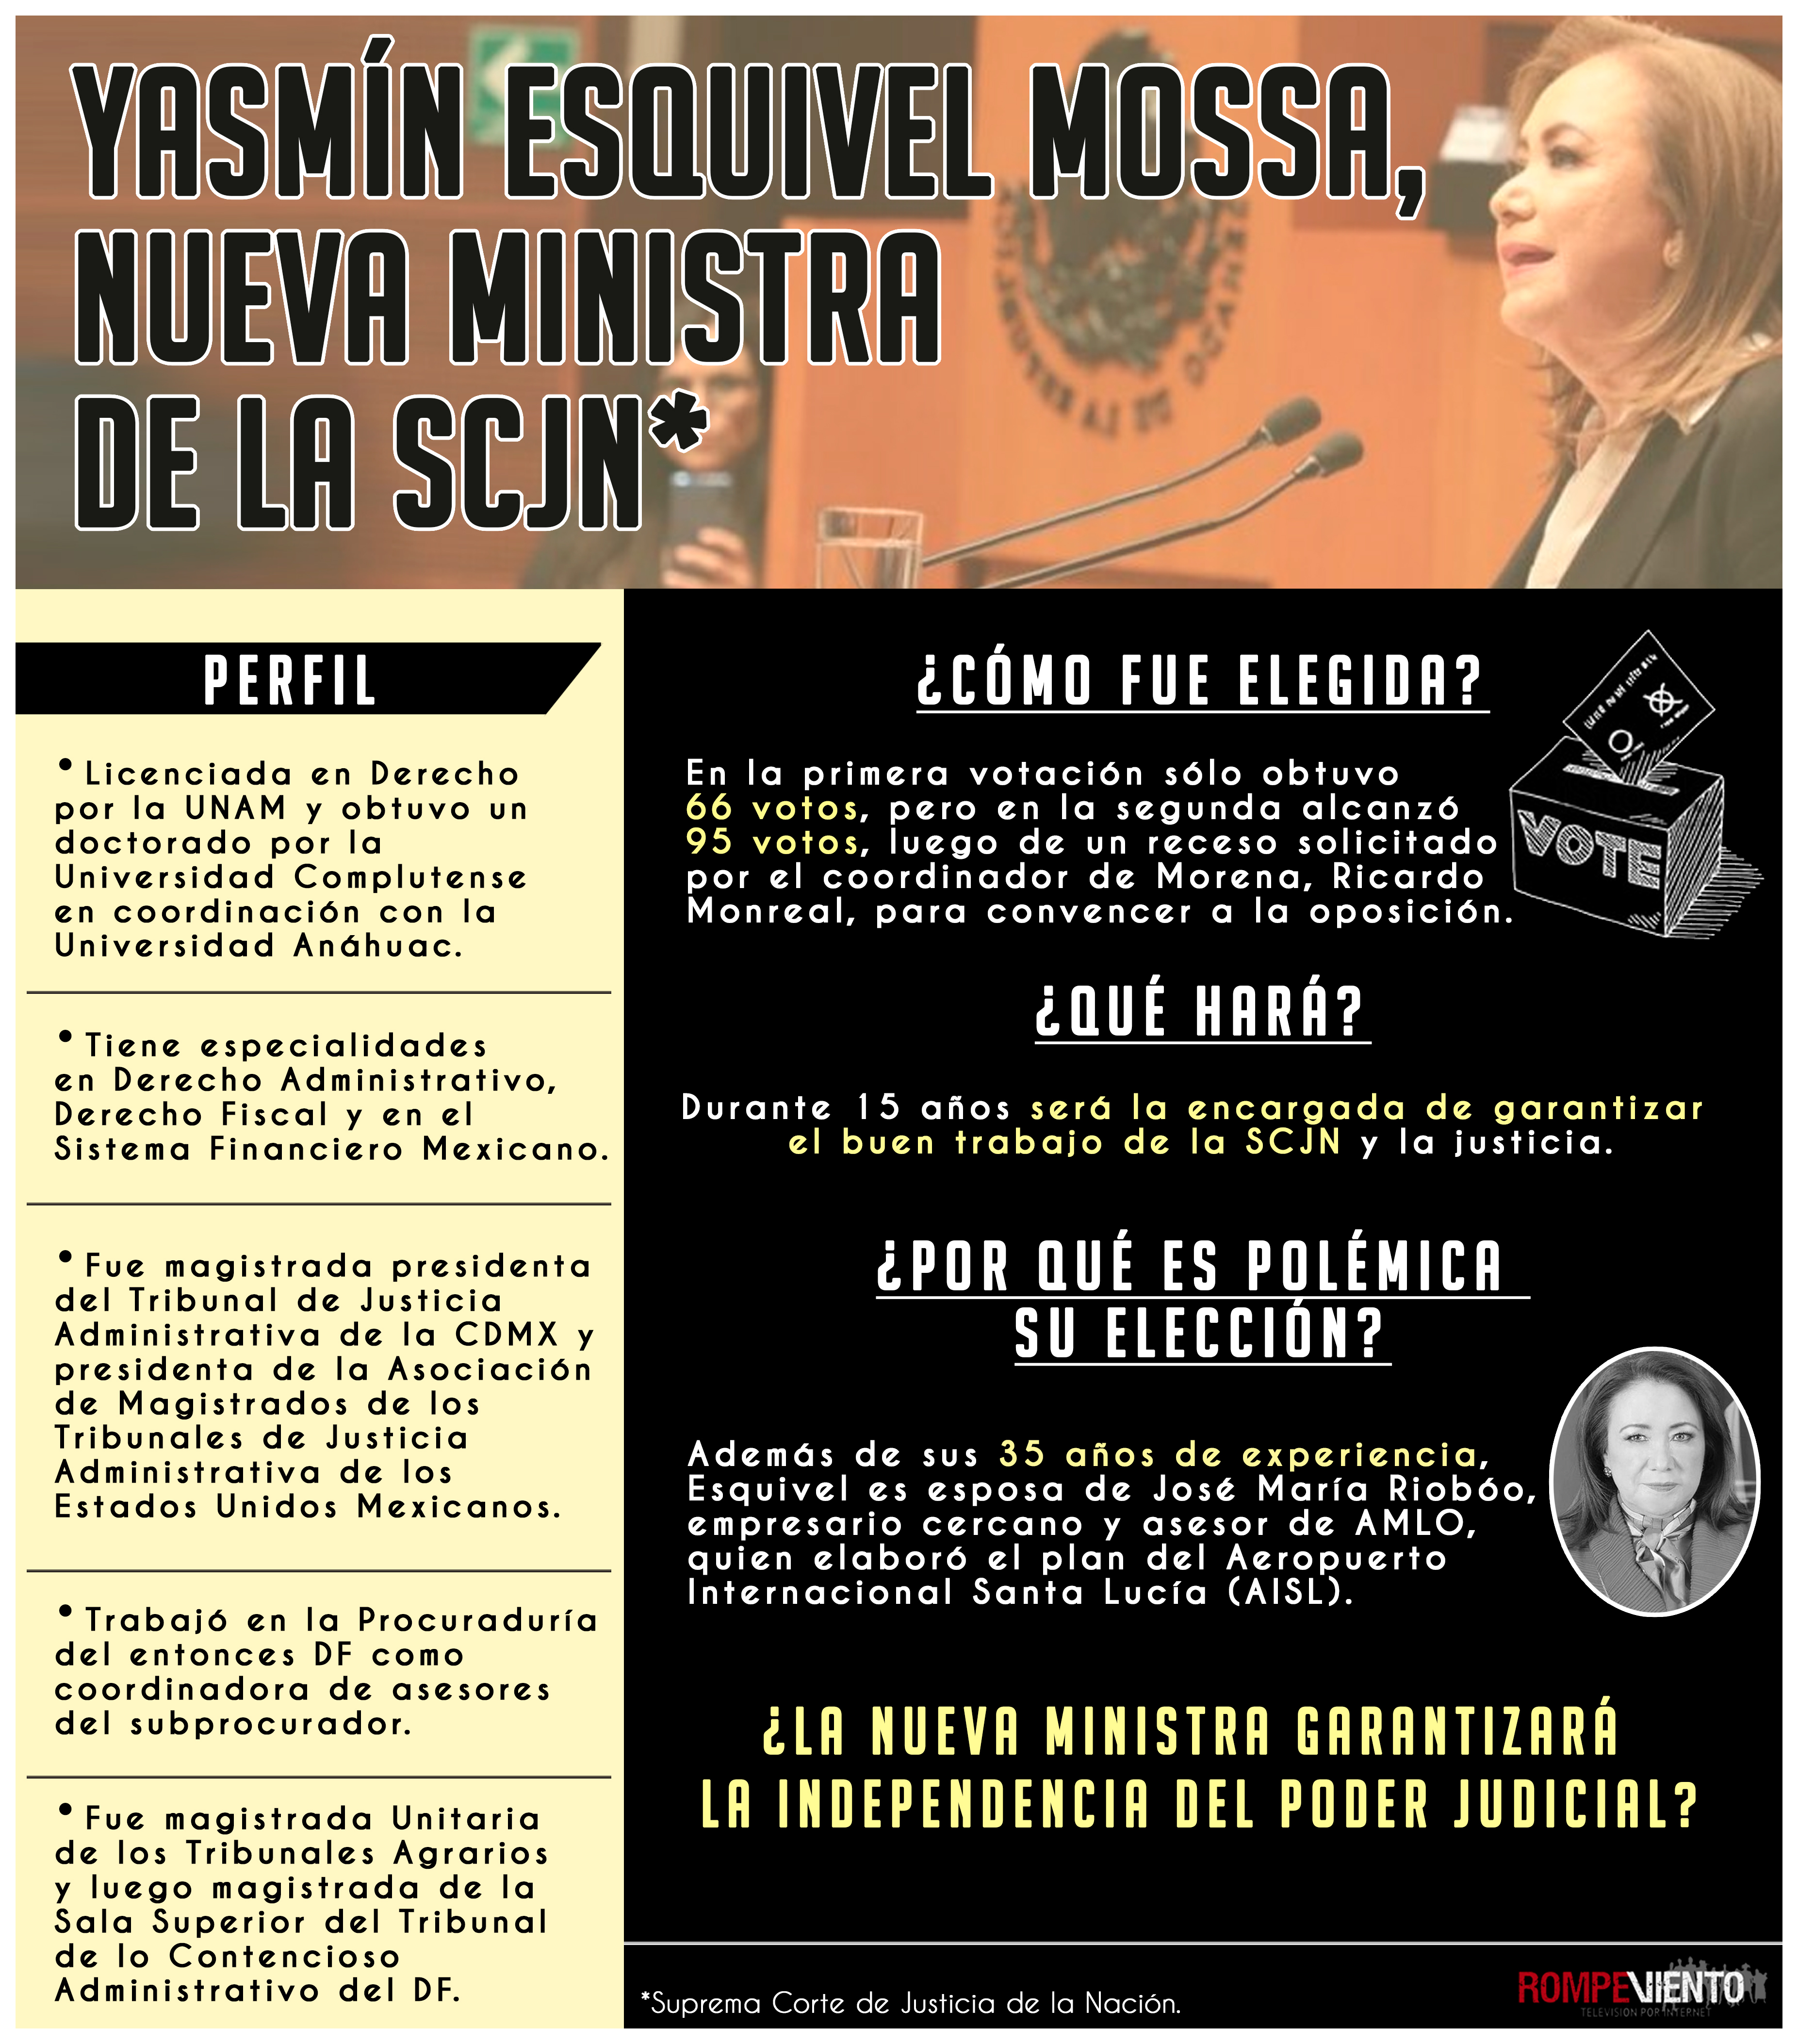 Yasmín Esquivel Mossa, nueva ministra de la SCJN